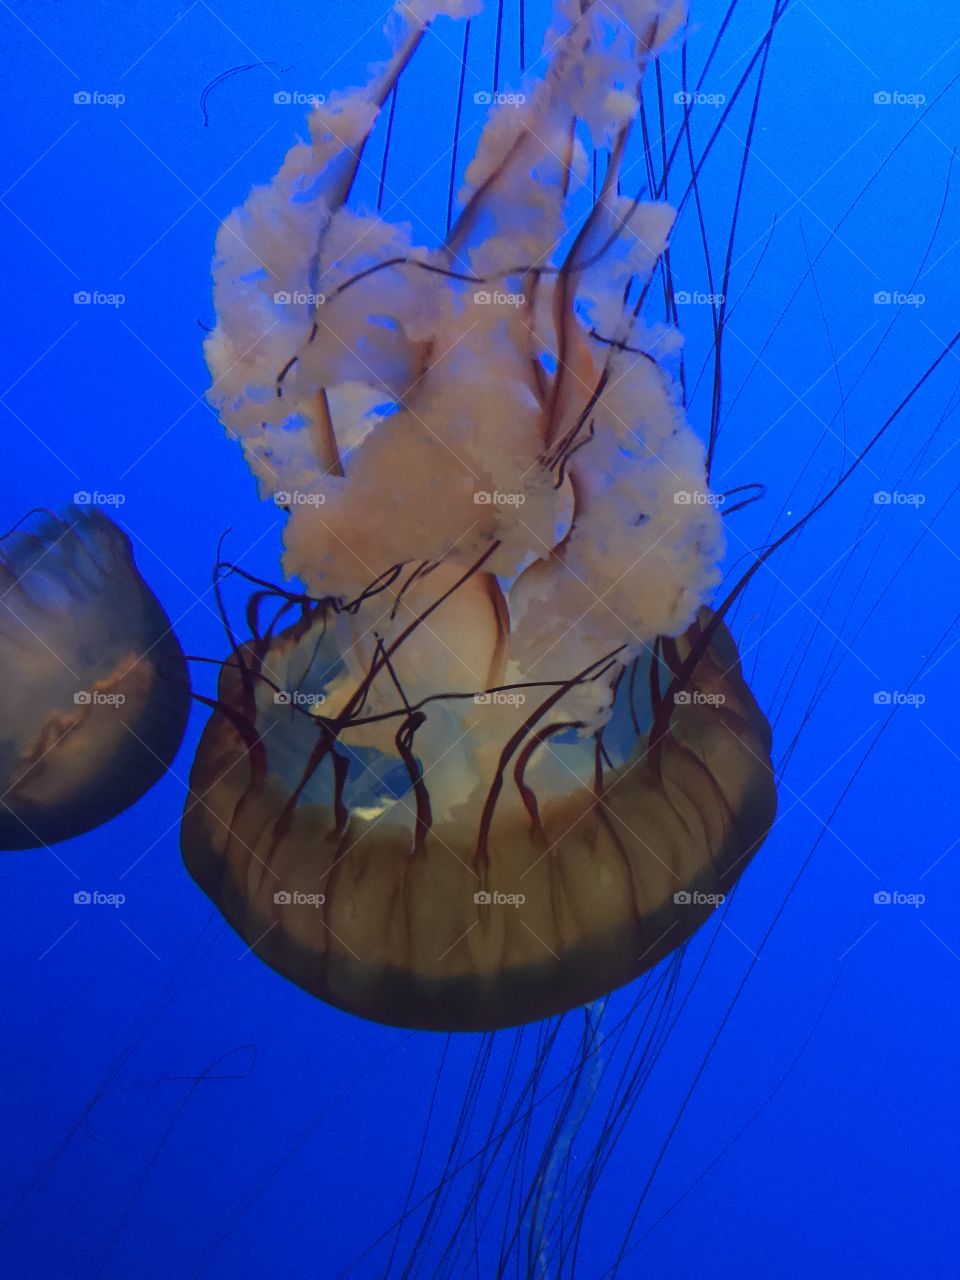 Jelly fish 